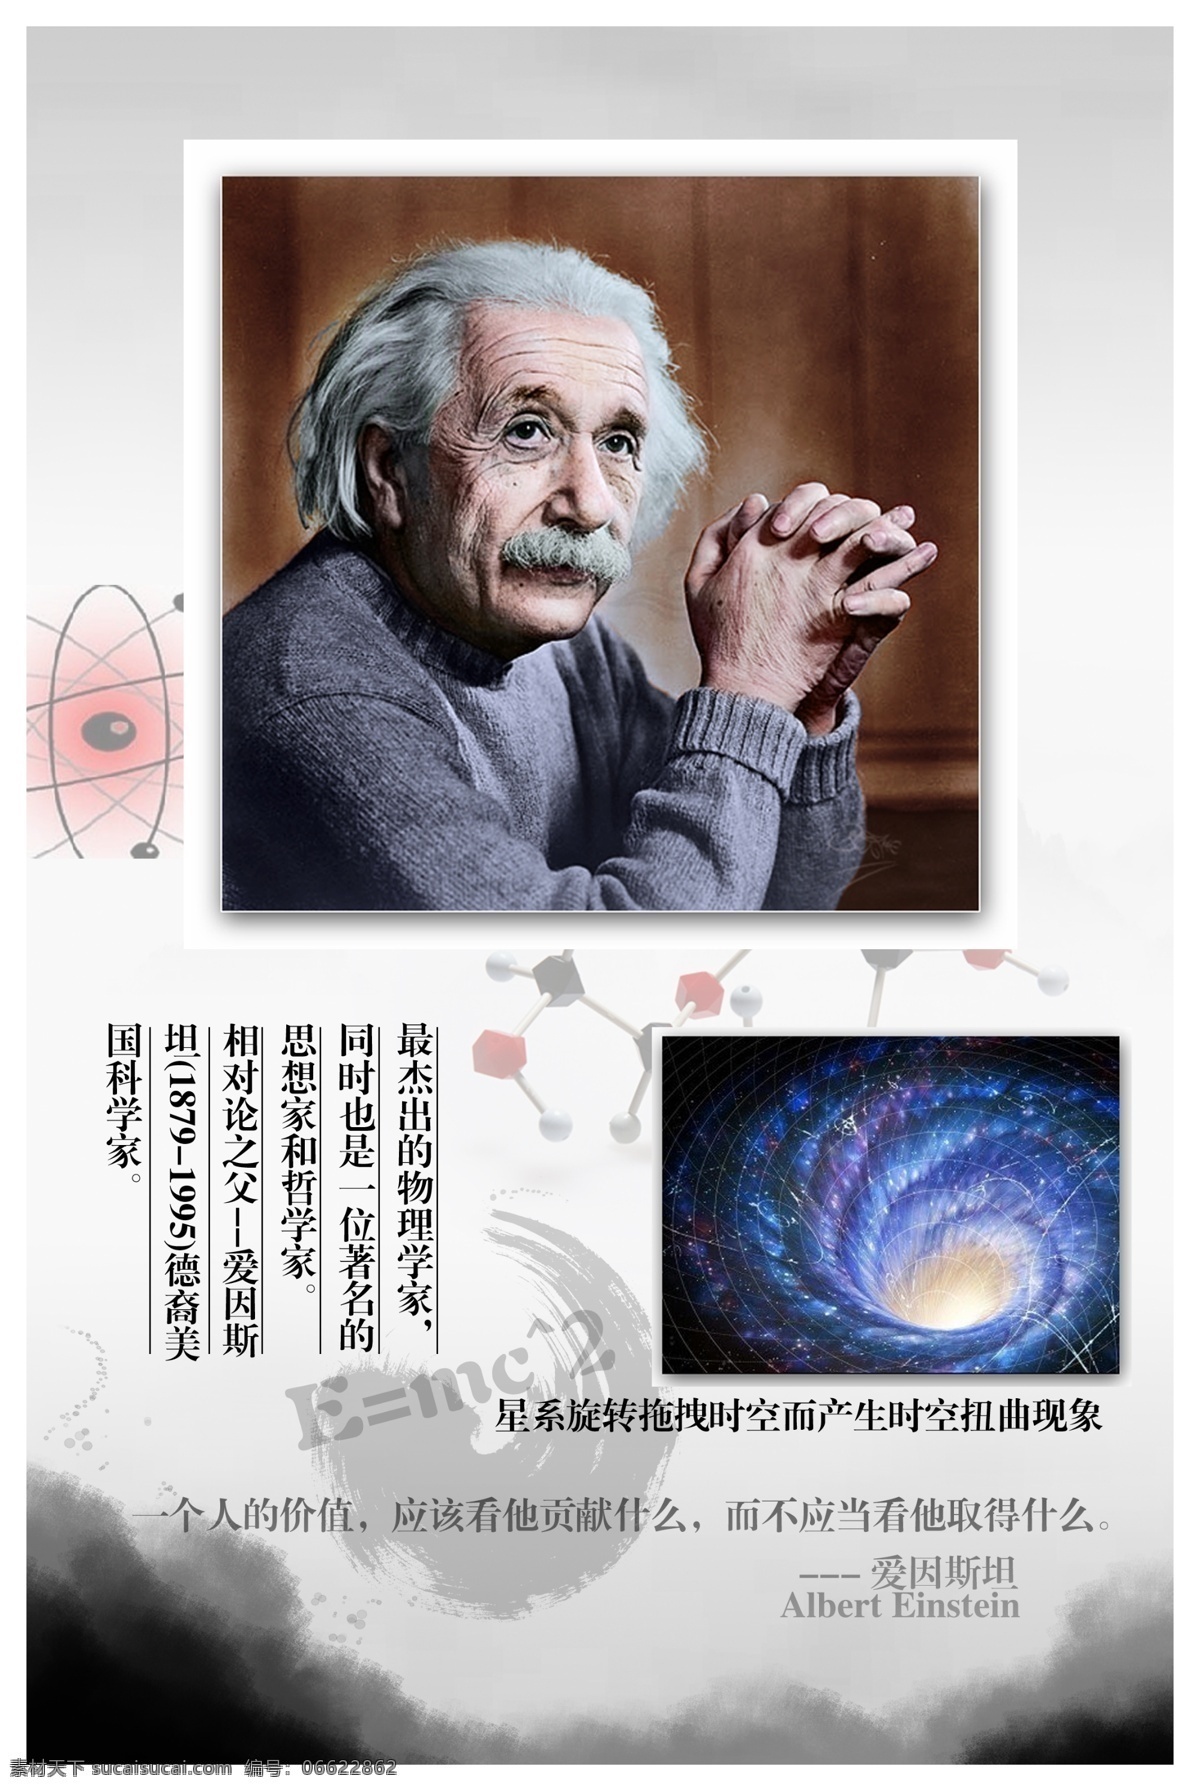 爱因斯坦 教学画框 历史名人 物理学家 展板模板 广告设计模板 源文件